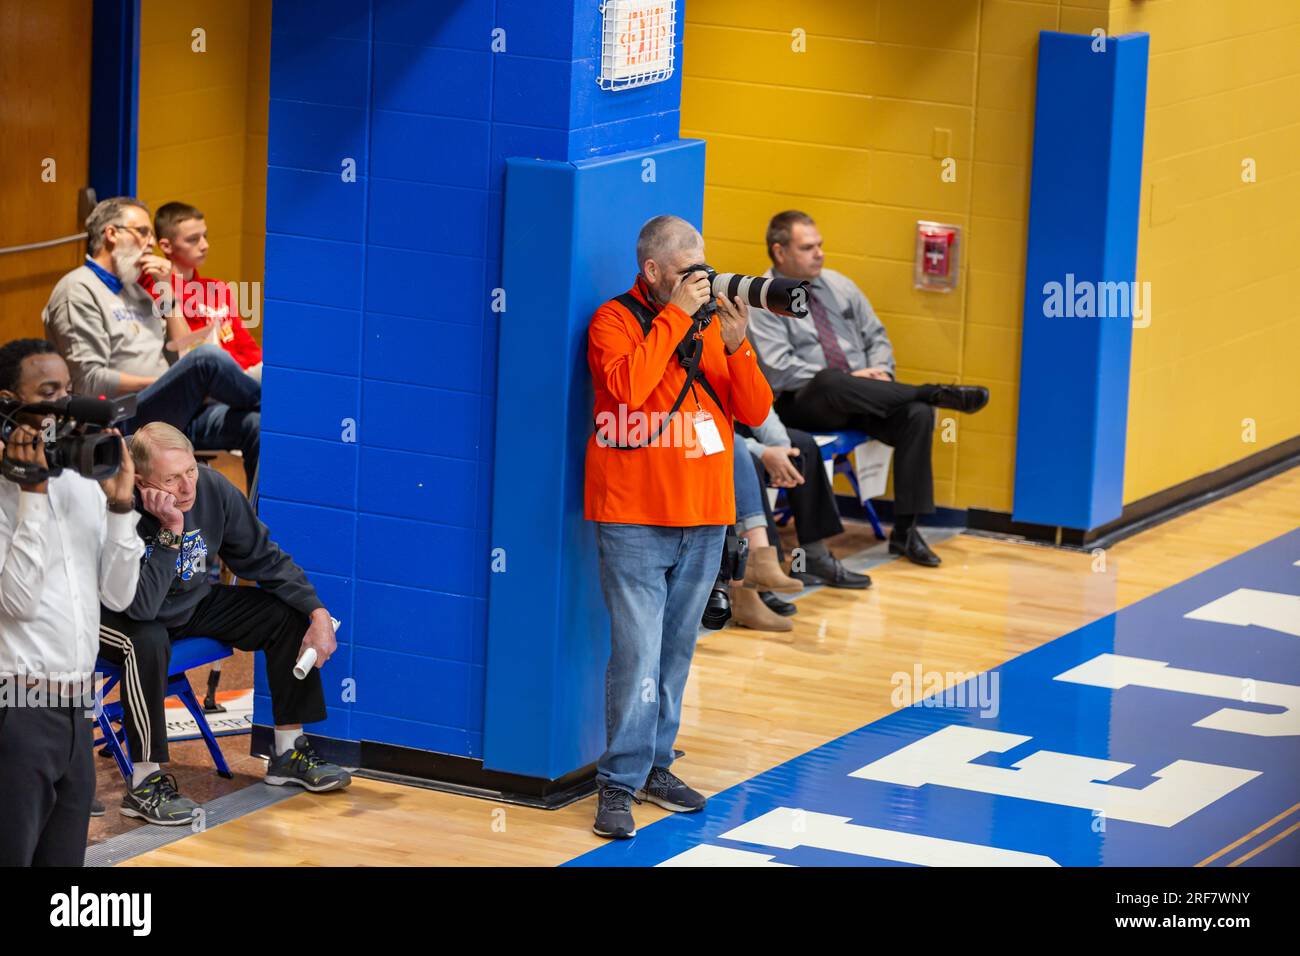 Un photographe de Leverage Photography prend une photo lors d'un match de basket-ball à North Judson San Pierre High School à North Judson, Indiana, États-Unis. Banque D'Images